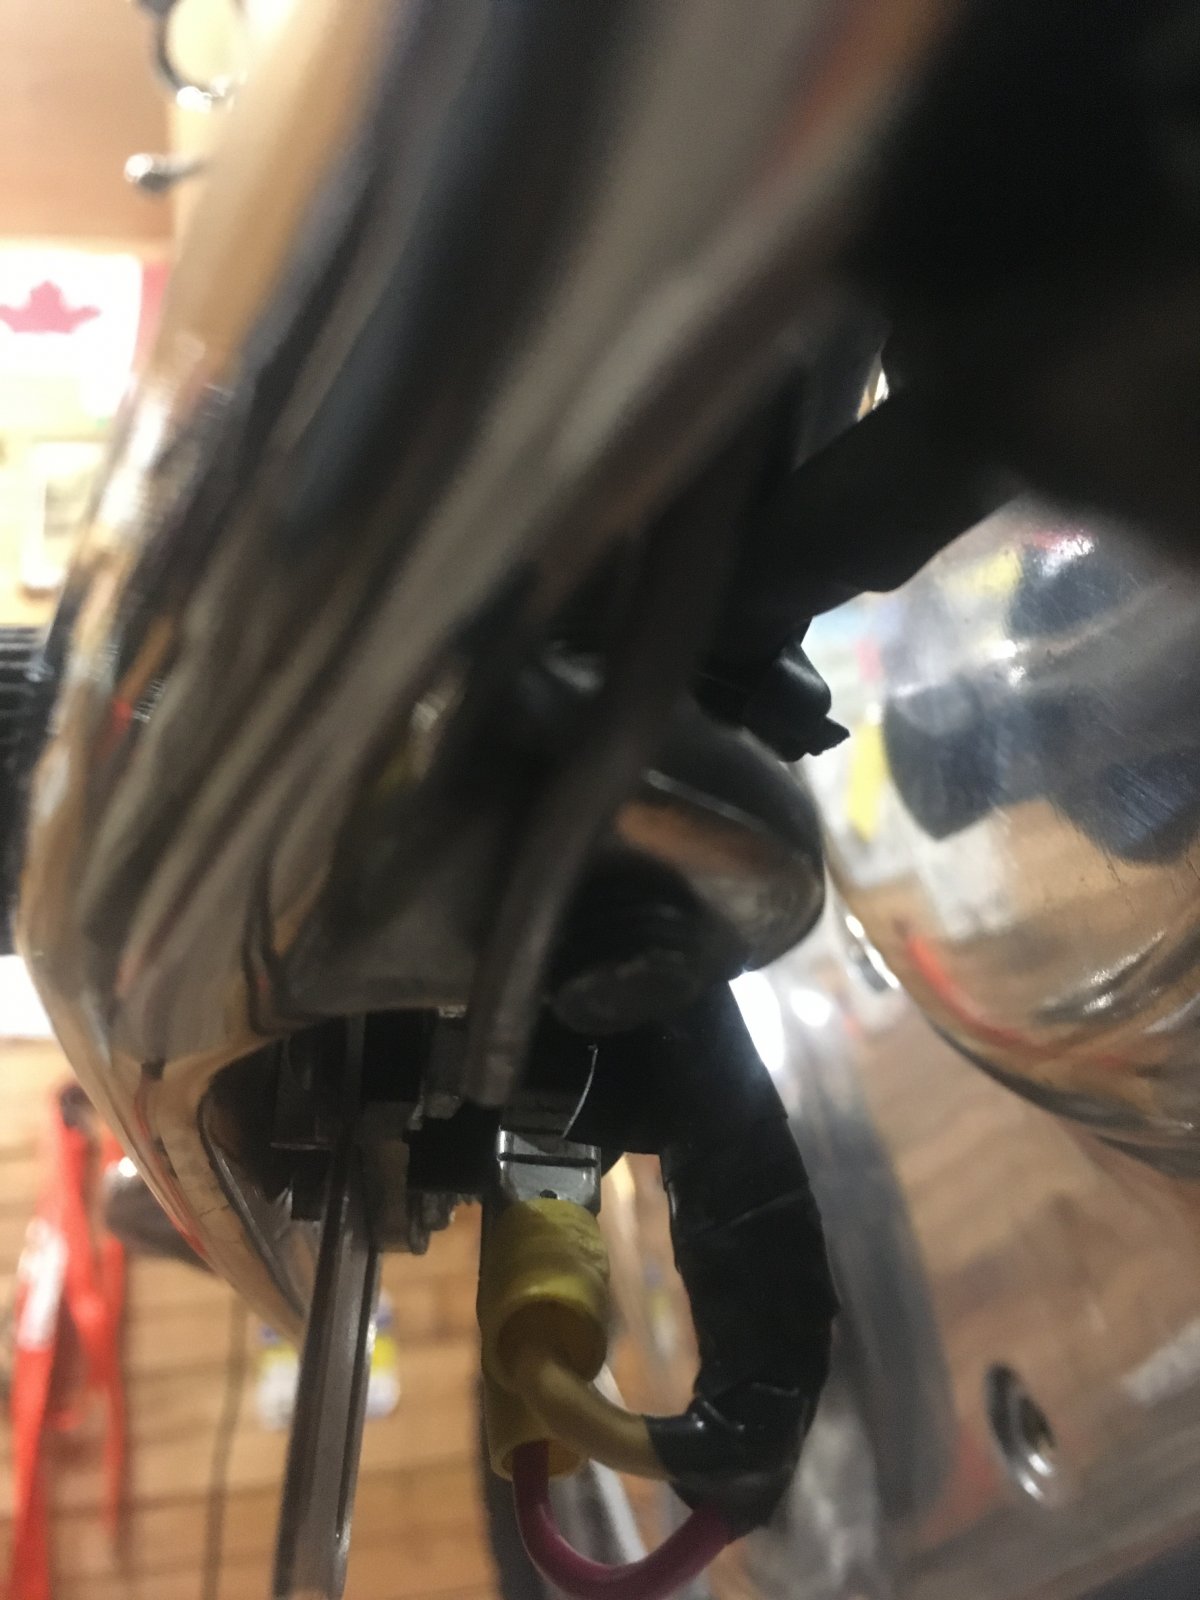 Brake pedal safety spring